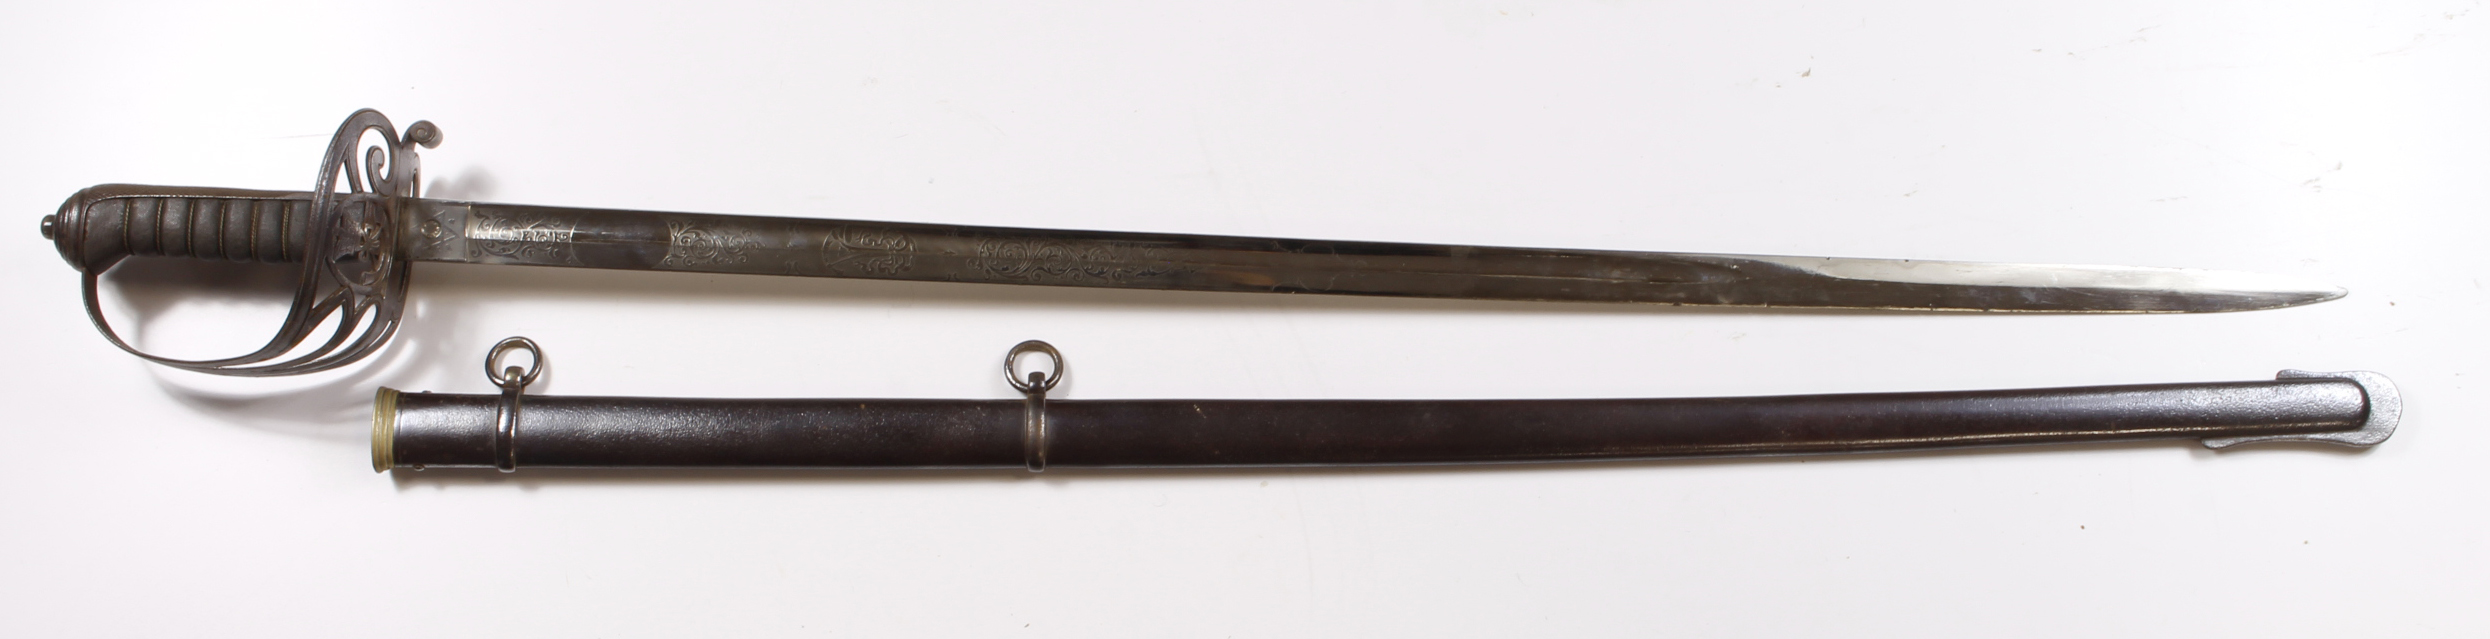 Rifle officers 1827 Pattern Sword by Walkins & Co, 133 Regents Street, London. Fine blade 32",